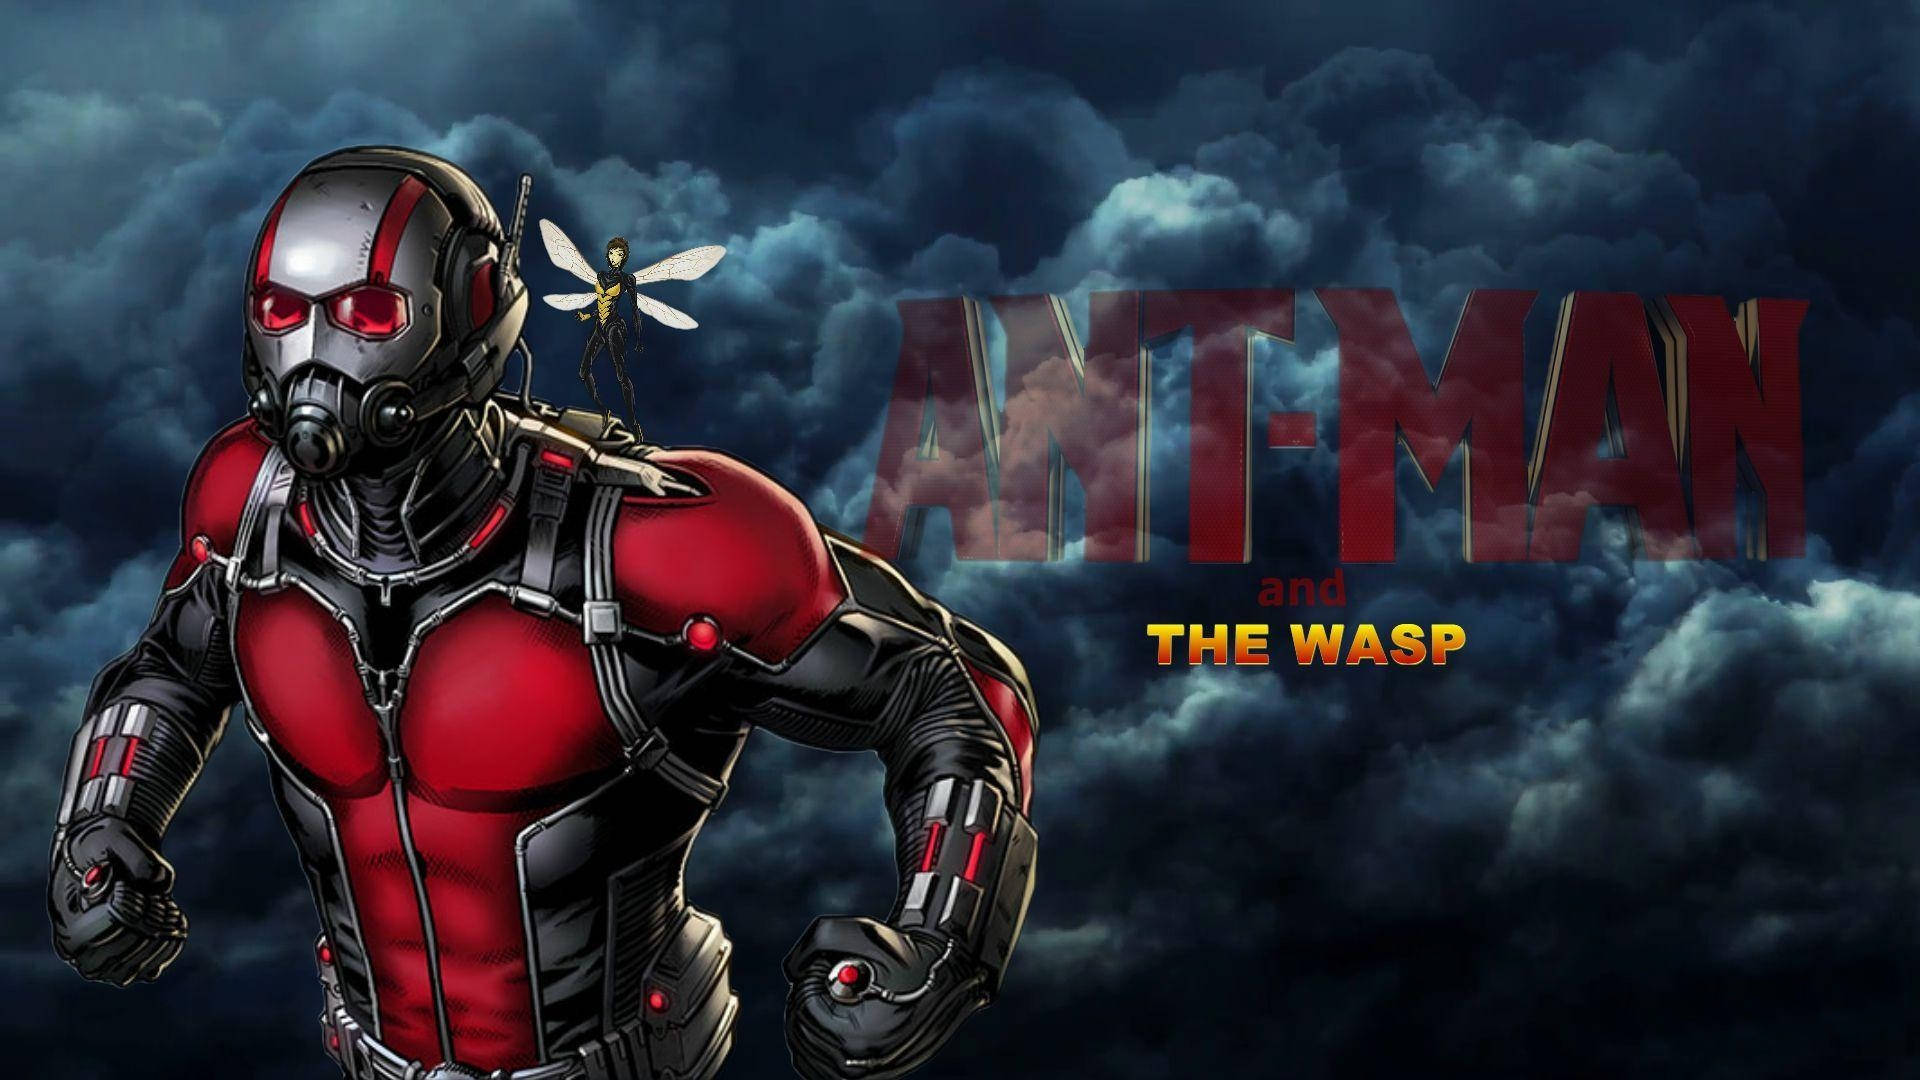 Ant Man And The Wasp wallpaper giver et energetisk, farverigt udseende. Wallpaper